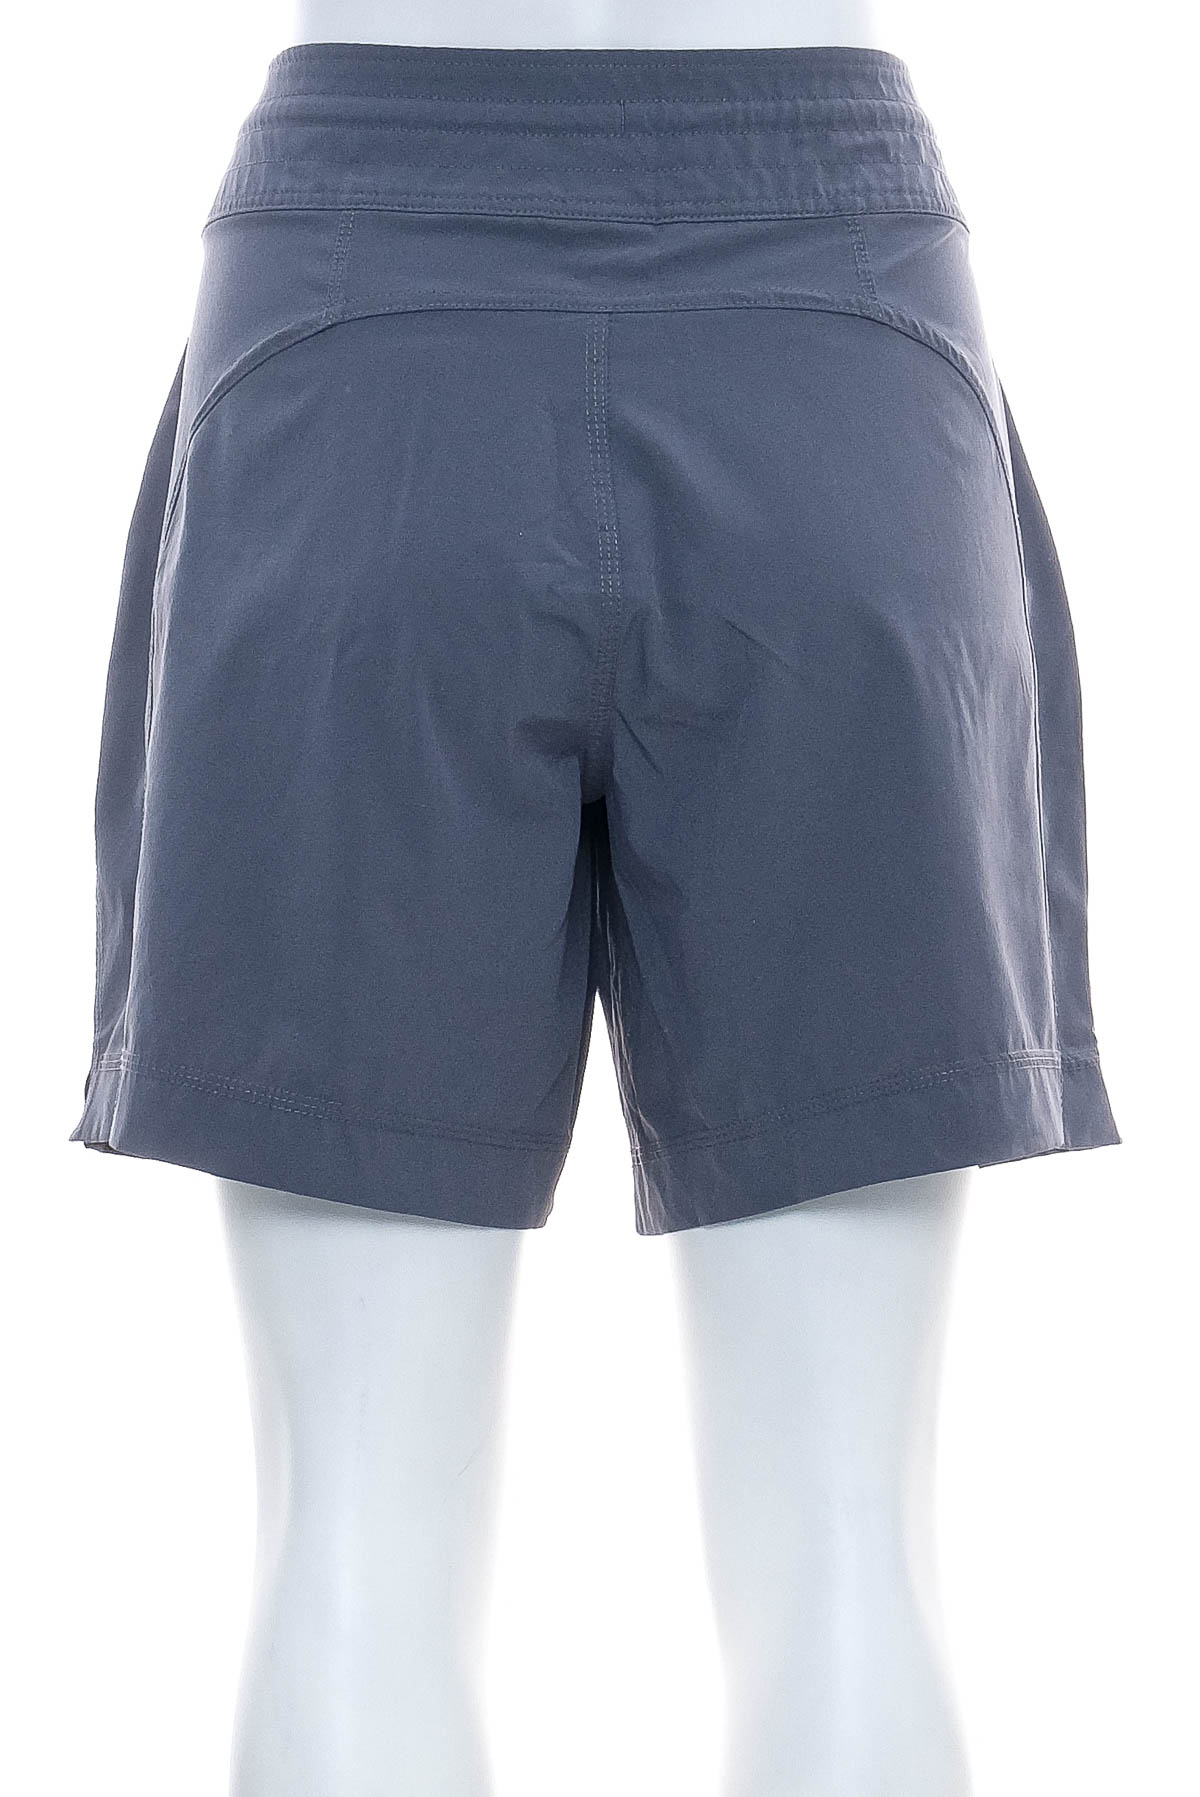 Krótkie spodnie damskie - Athletic Works - 1